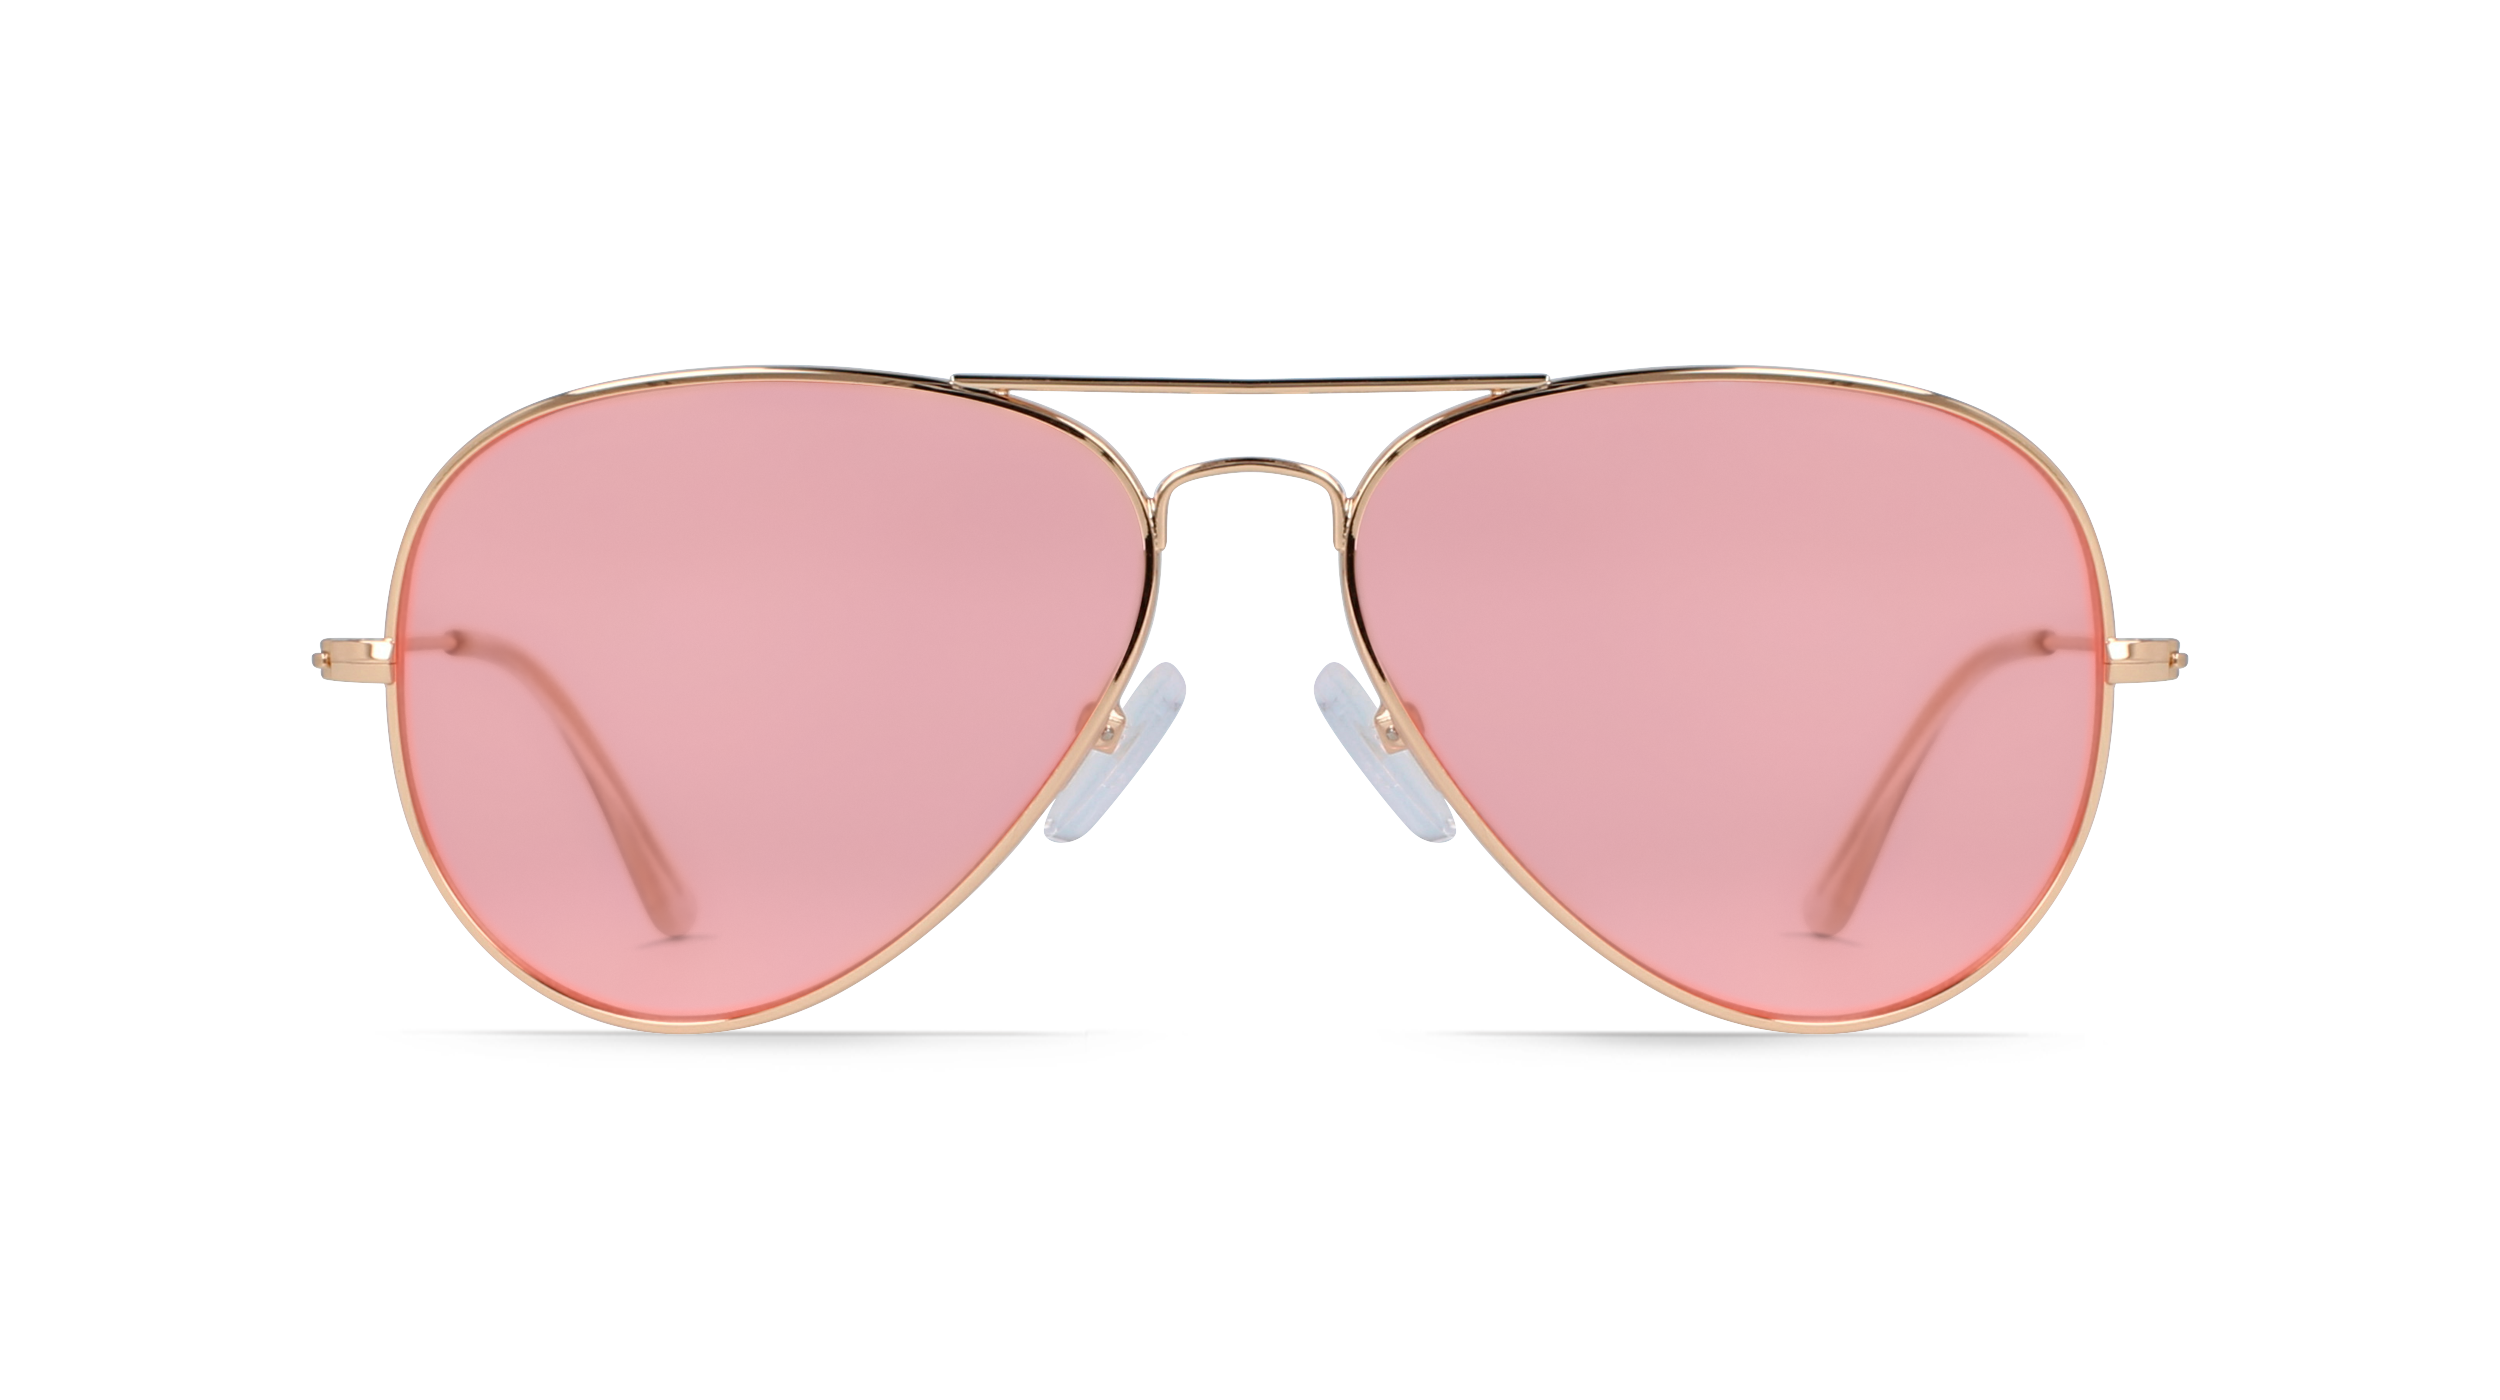 Sonnenbrille schmal kantig verspiegelt 400 UV zweifarbig pink grün weiß orange b 